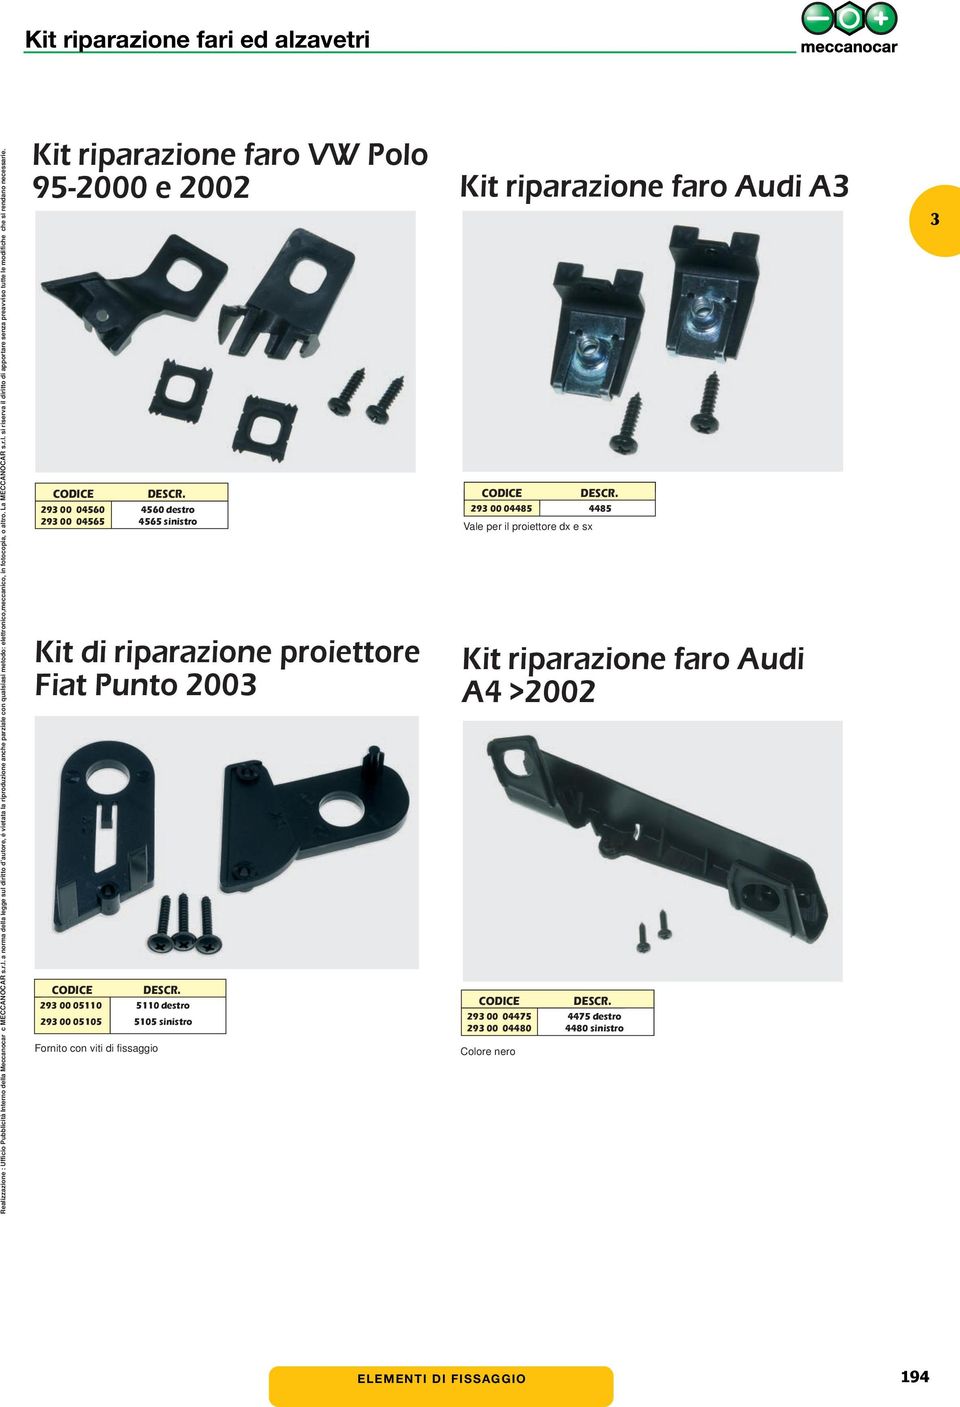 sinistro Kit riparazione faro Audi A 29 00 04485 4485 Vale per il proiettore dx e sx Kit